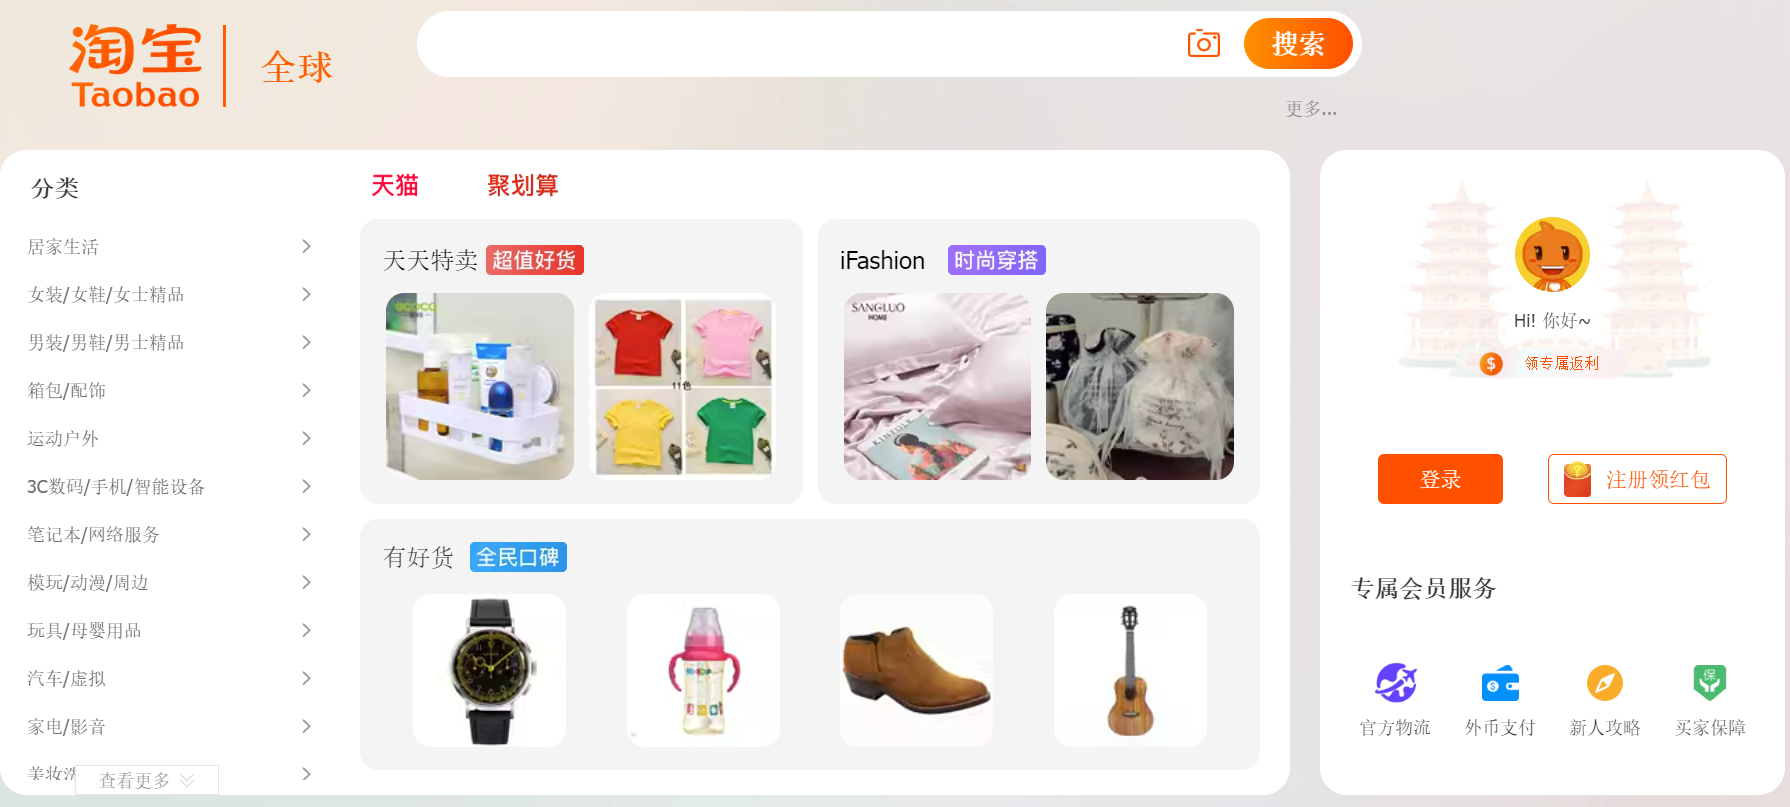 Taobao - ведущий китайский маркетплейс от Alibaba Group для работы с Китаем